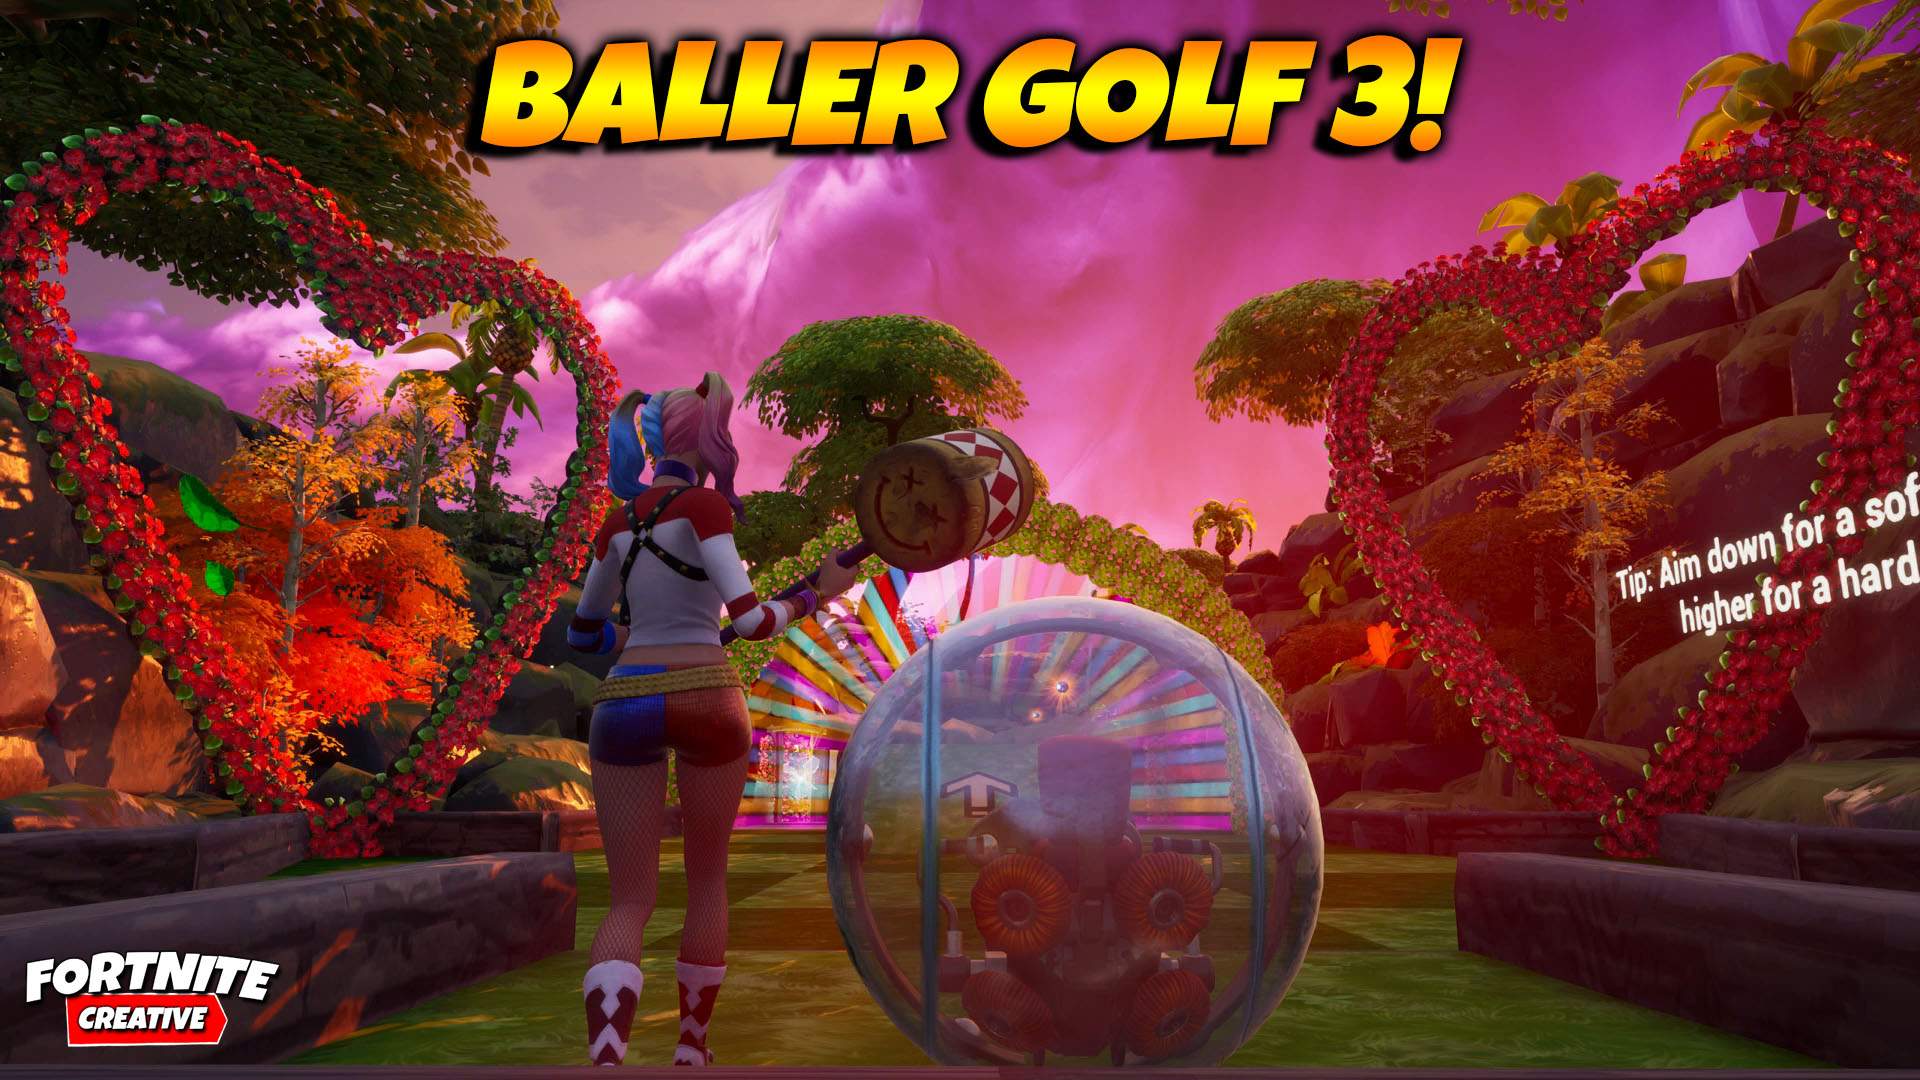 Baller Golf Code Fortnite Baller Golf 3 Fortnite Creative Map Code Dropnite